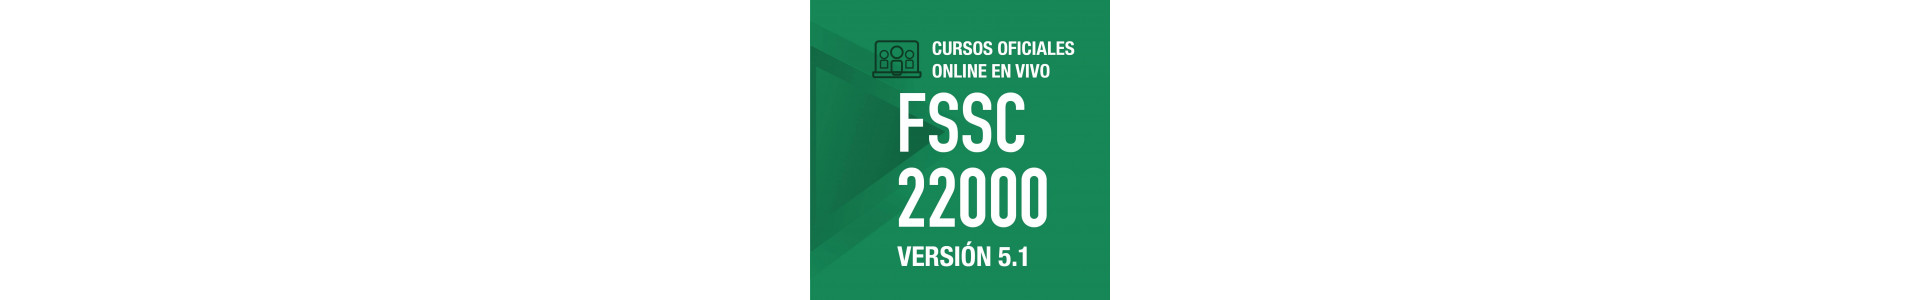 Cursos online | FSSC 22000